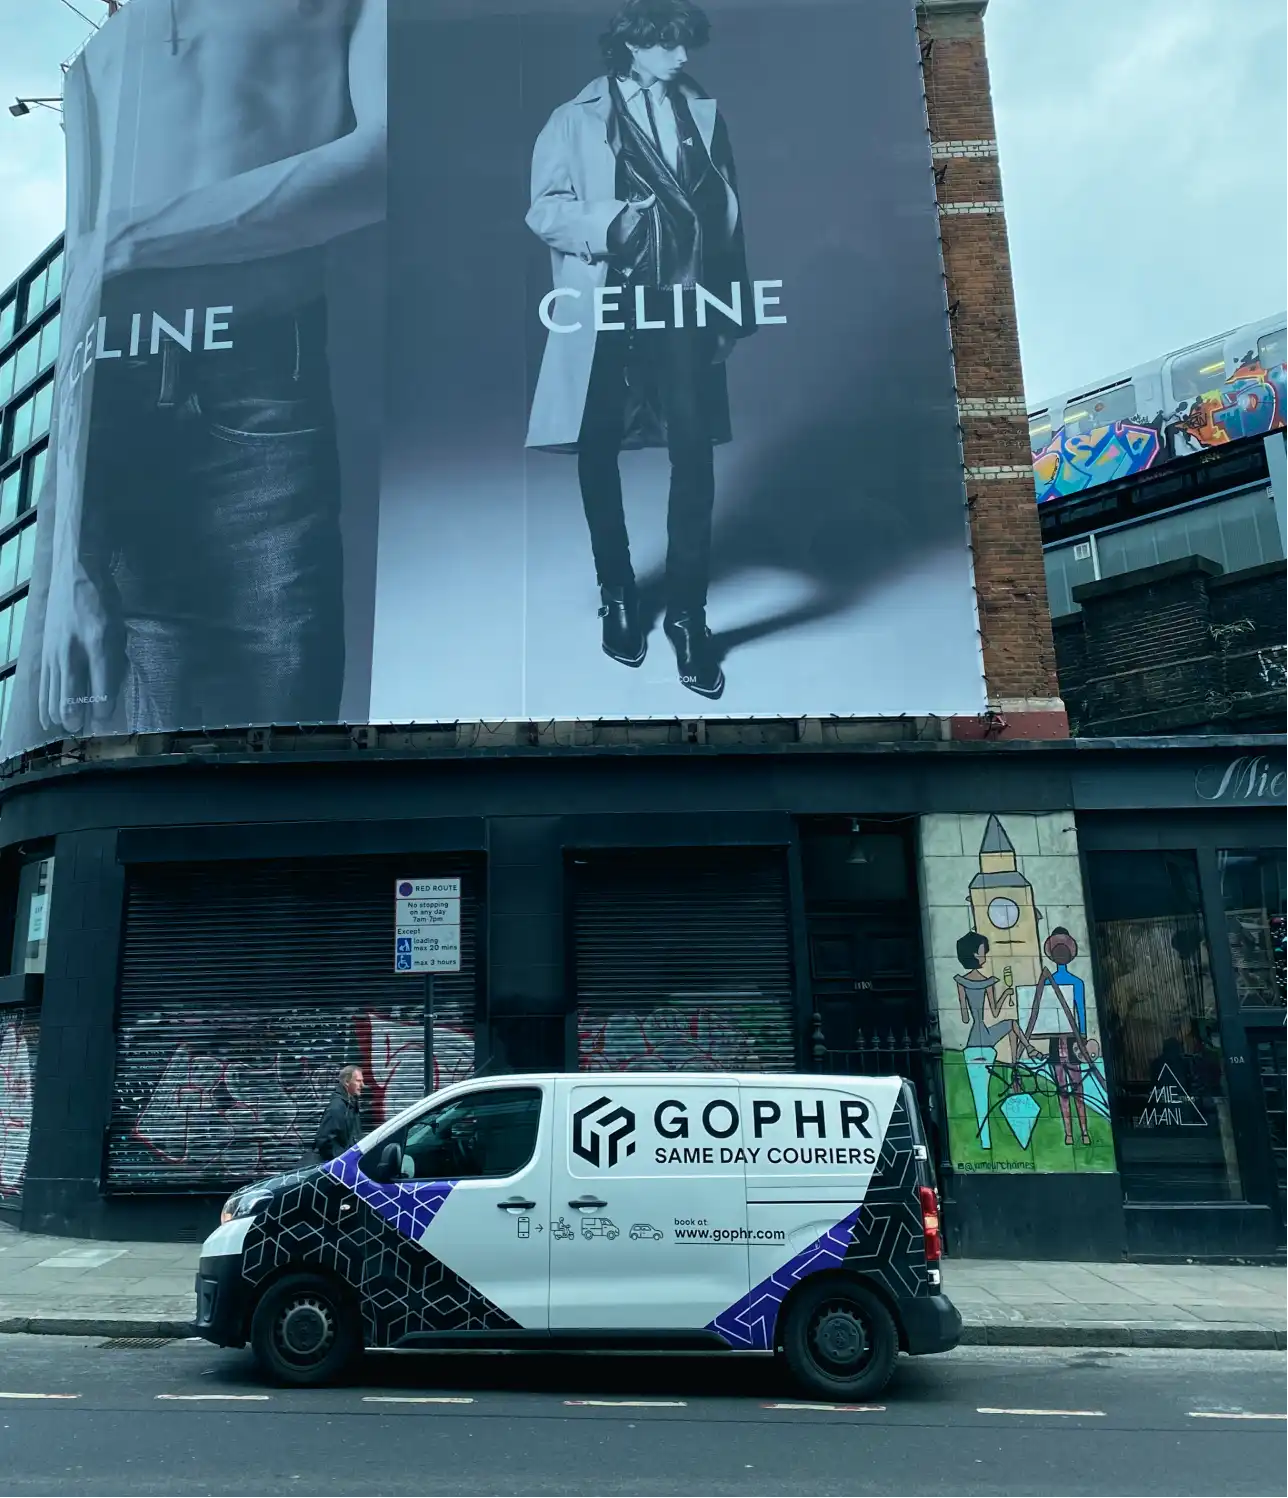 Gophr van advertising